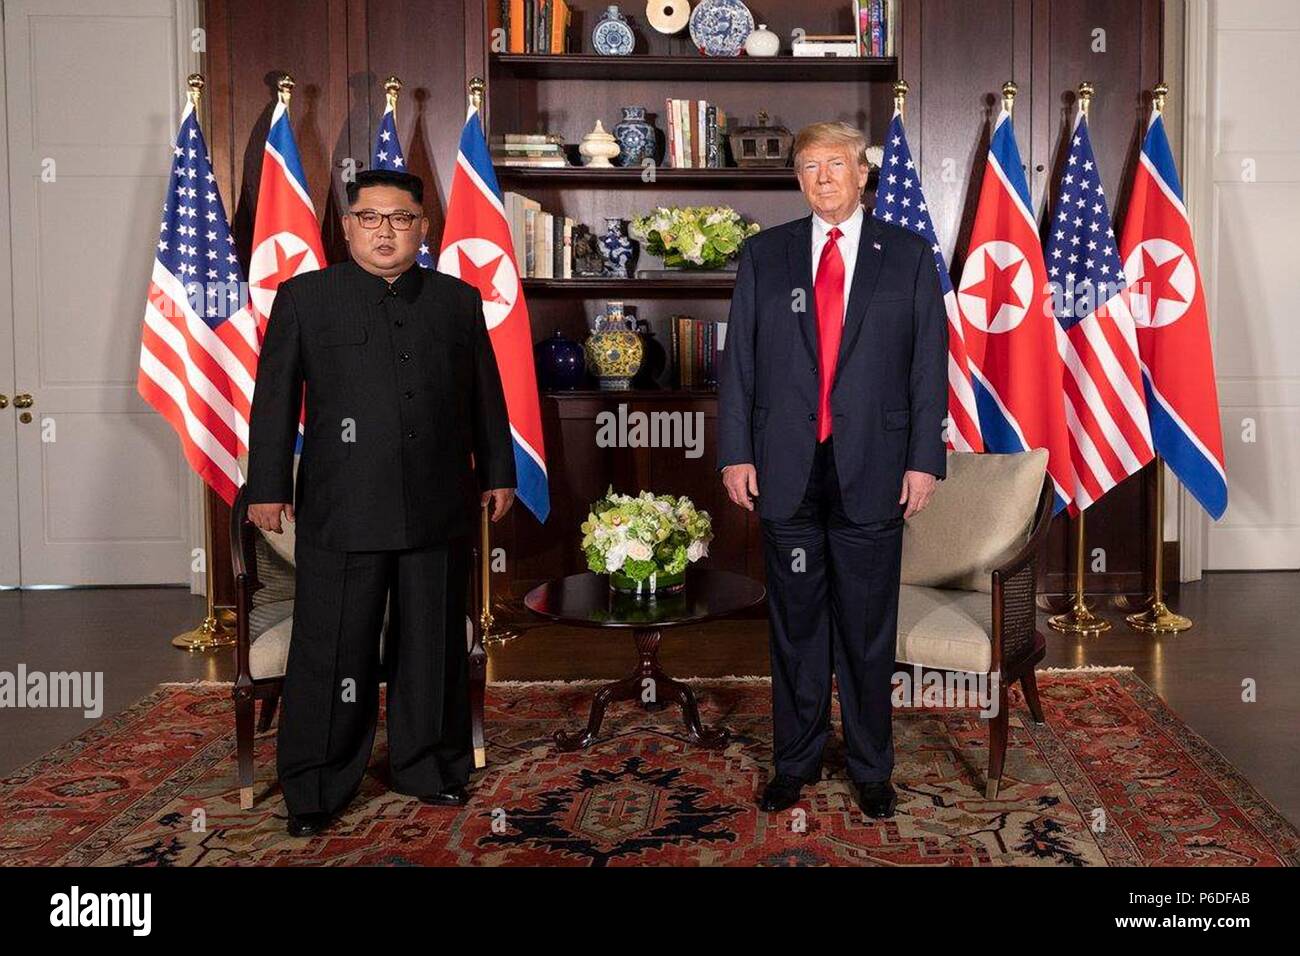 Le Président américain Donald Trump, à droite, se tient à côté d'Le dirigeant nord-coréen Kim Jong Un avant le début de leur réunion bilatérale à la Capella resort 12 Juin, 2018 dans l'île de Sentosa, Singapour. Banque D'Images